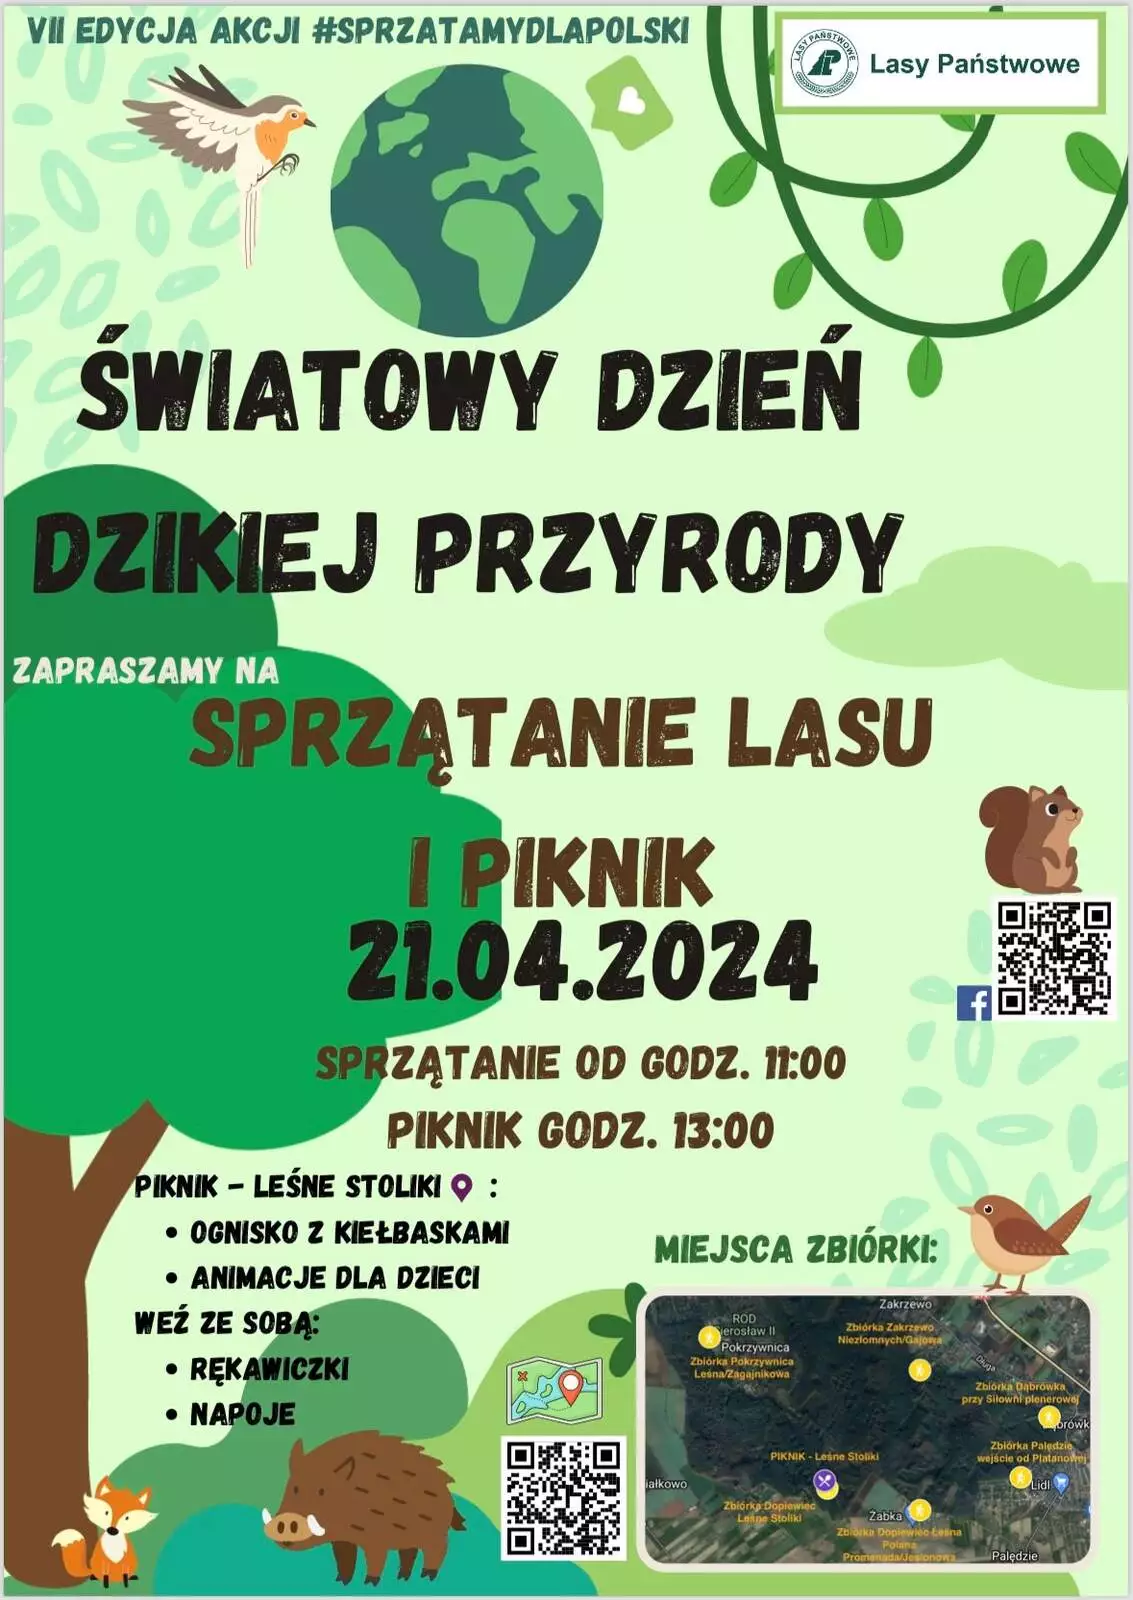 Sprzątanie lasu Zakrzewsko-Palędzkiego w ramach akcji #SprzątamyDlaPolski